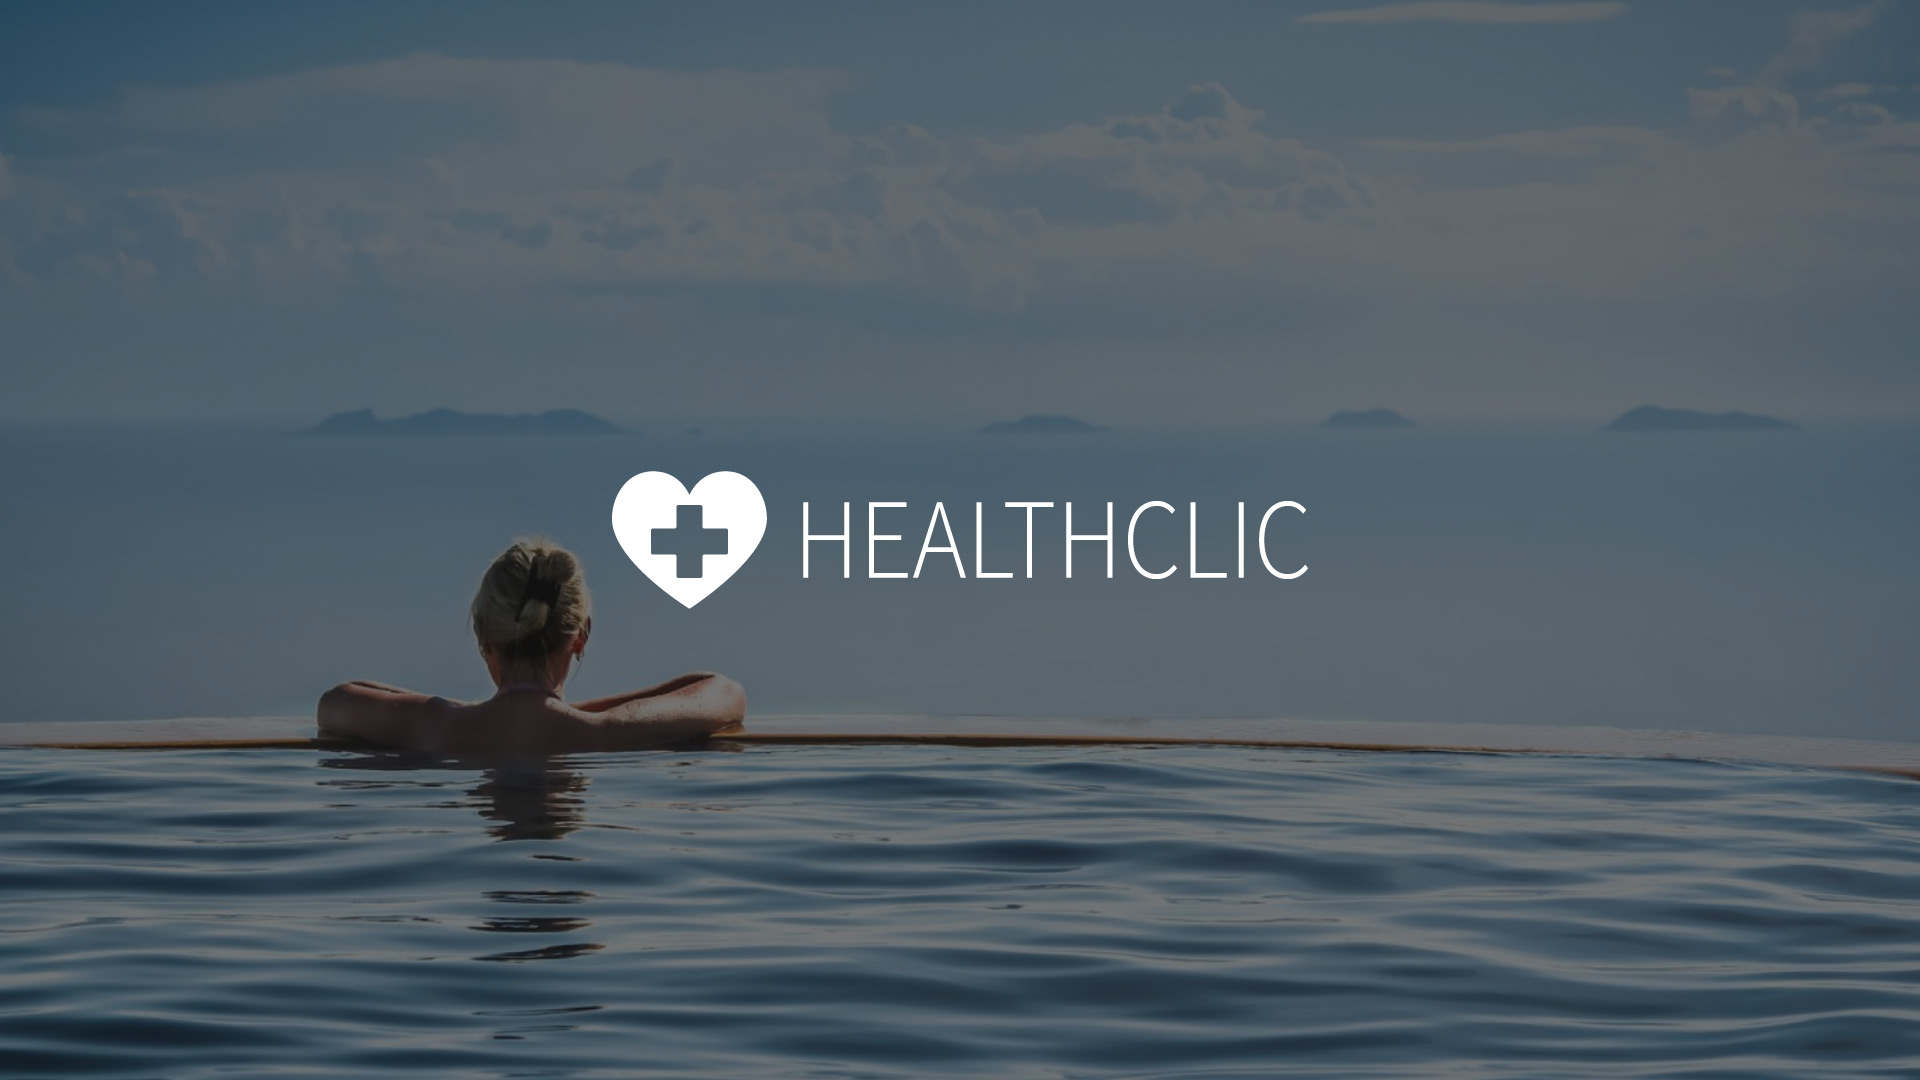 Private healthcare website design